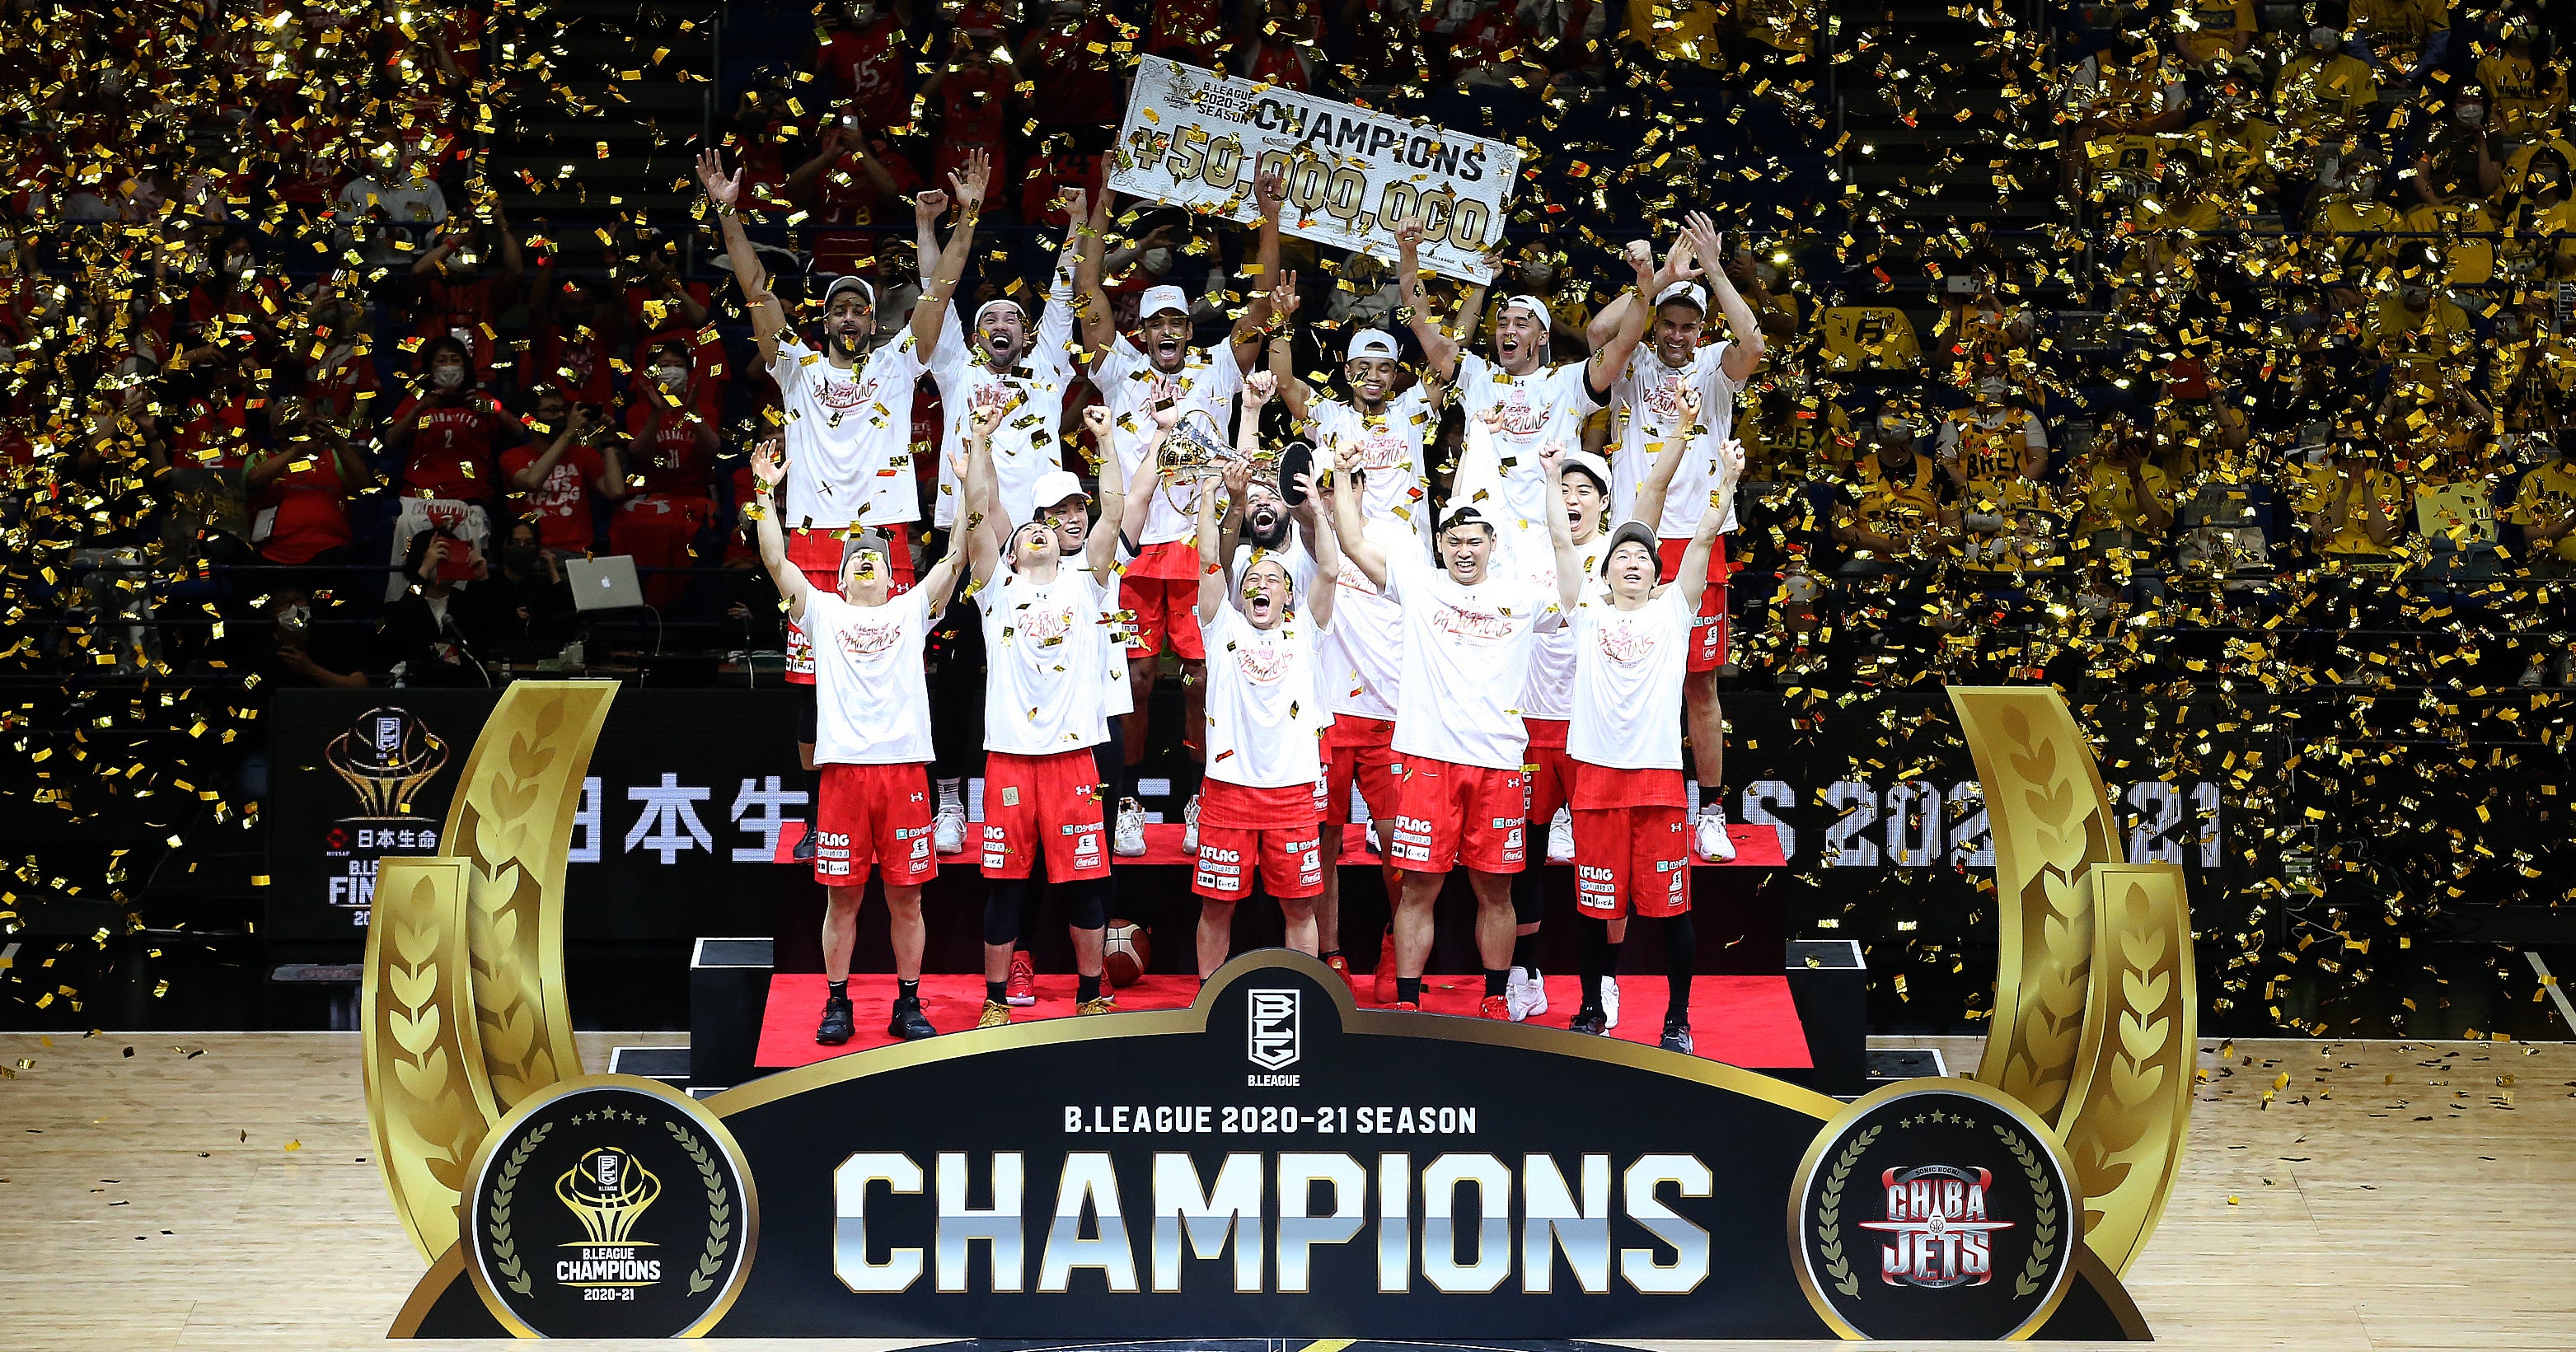 「千葉ジェッツ 」が初の優勝  B.LEAGUE 2020-21シーズン 年間チャンピオン決定のお知らせ